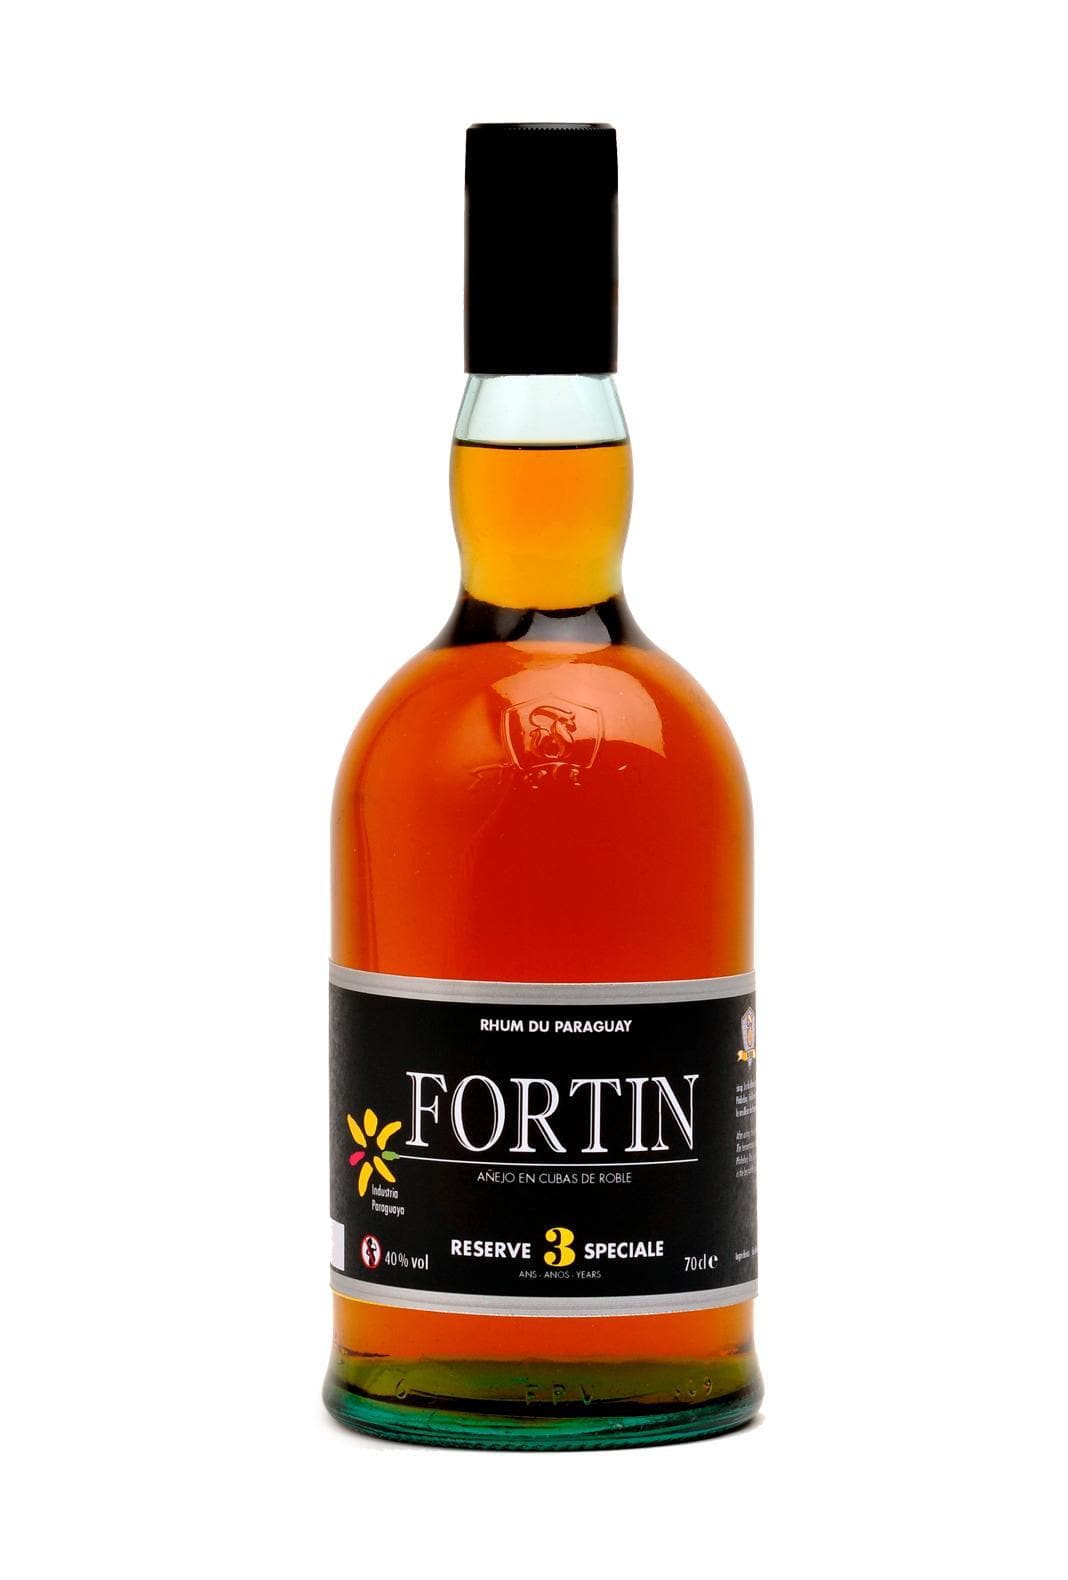 Fortin Rum 3 years Paraguay 40% 700ml